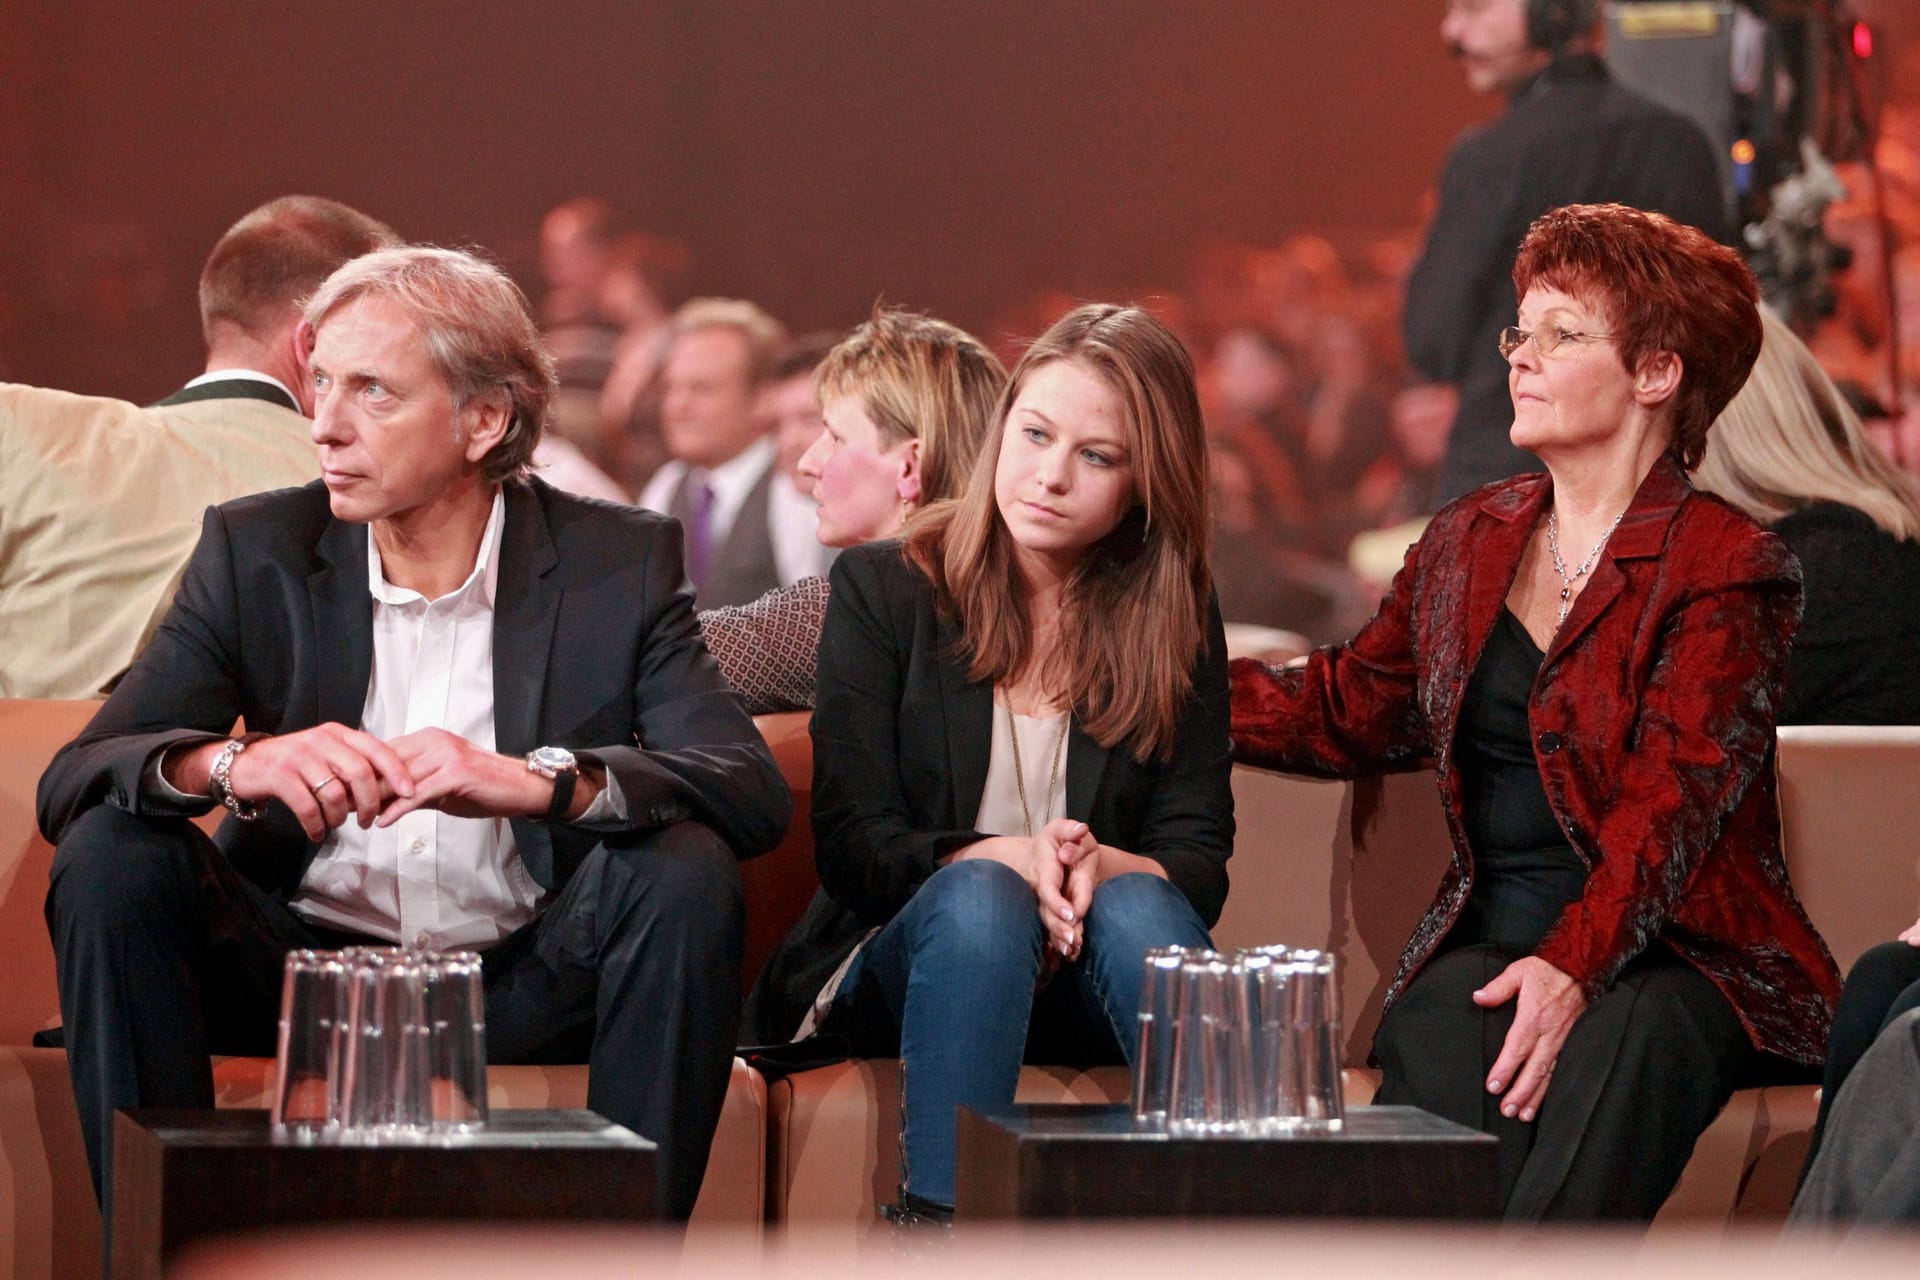 Lena-Maria Ferber mit ihrem Stiefvater Ulrich Ferber und ihrer Großmutter Helga Zellen bei "Andrea Berg - Die 20 Jahre Show"